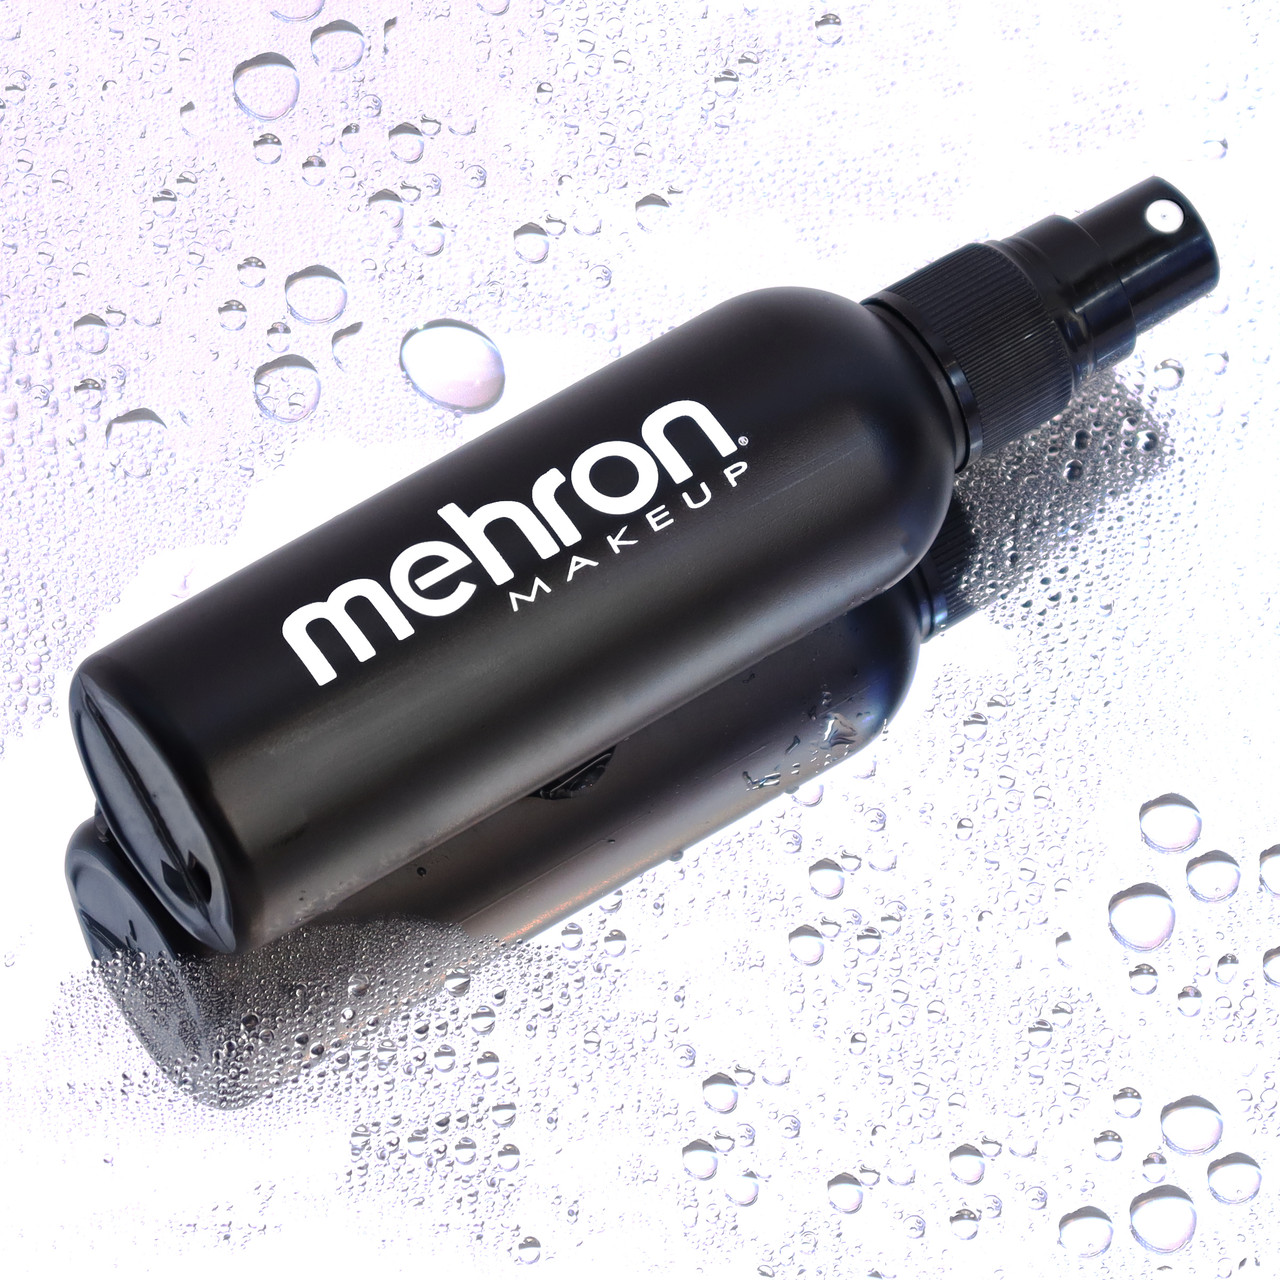 How to: Mehron Barrier Spray 